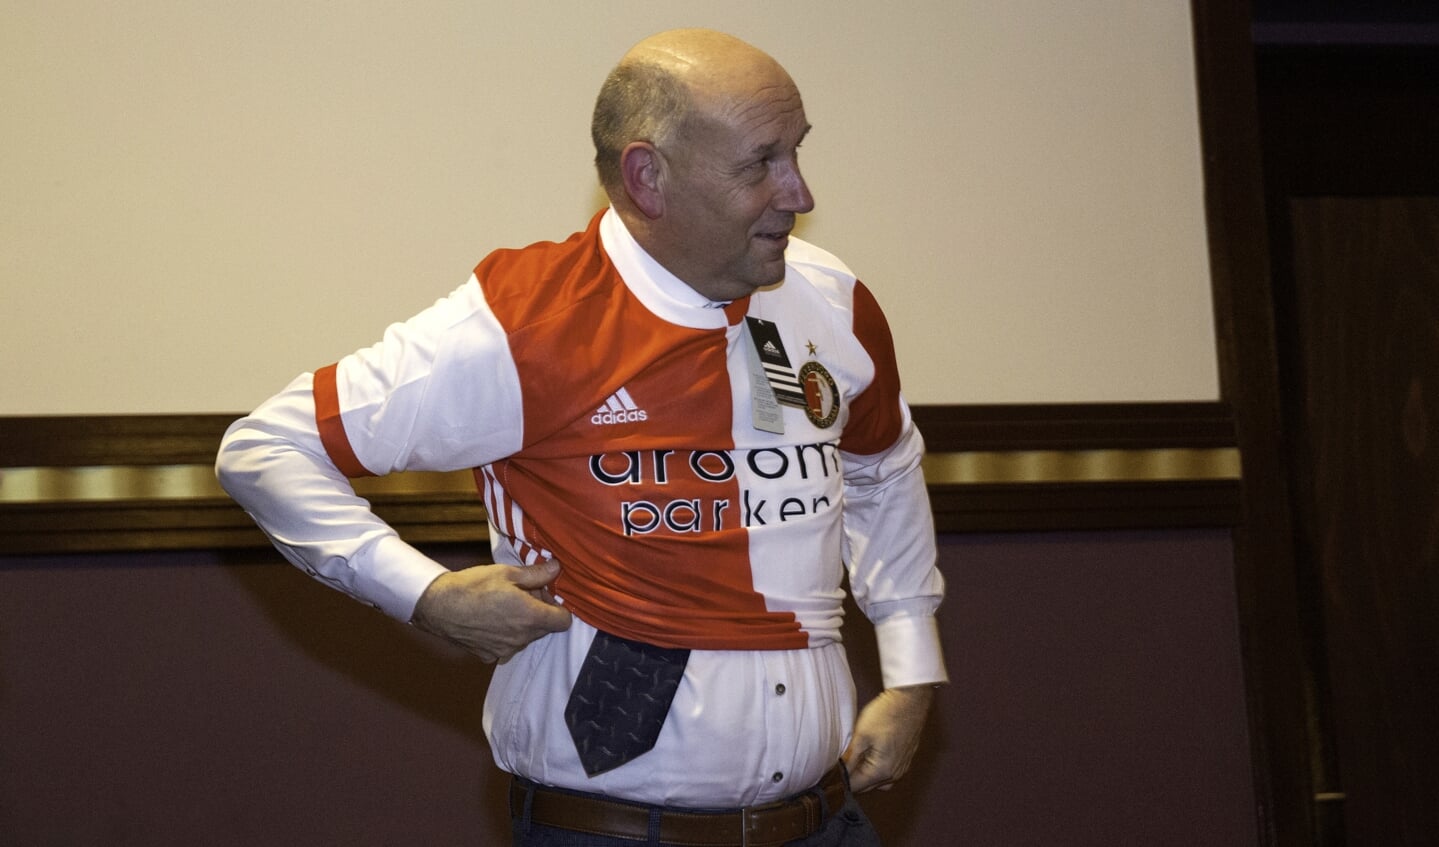 Evert van de Veen met Feyenoord-shirt. 